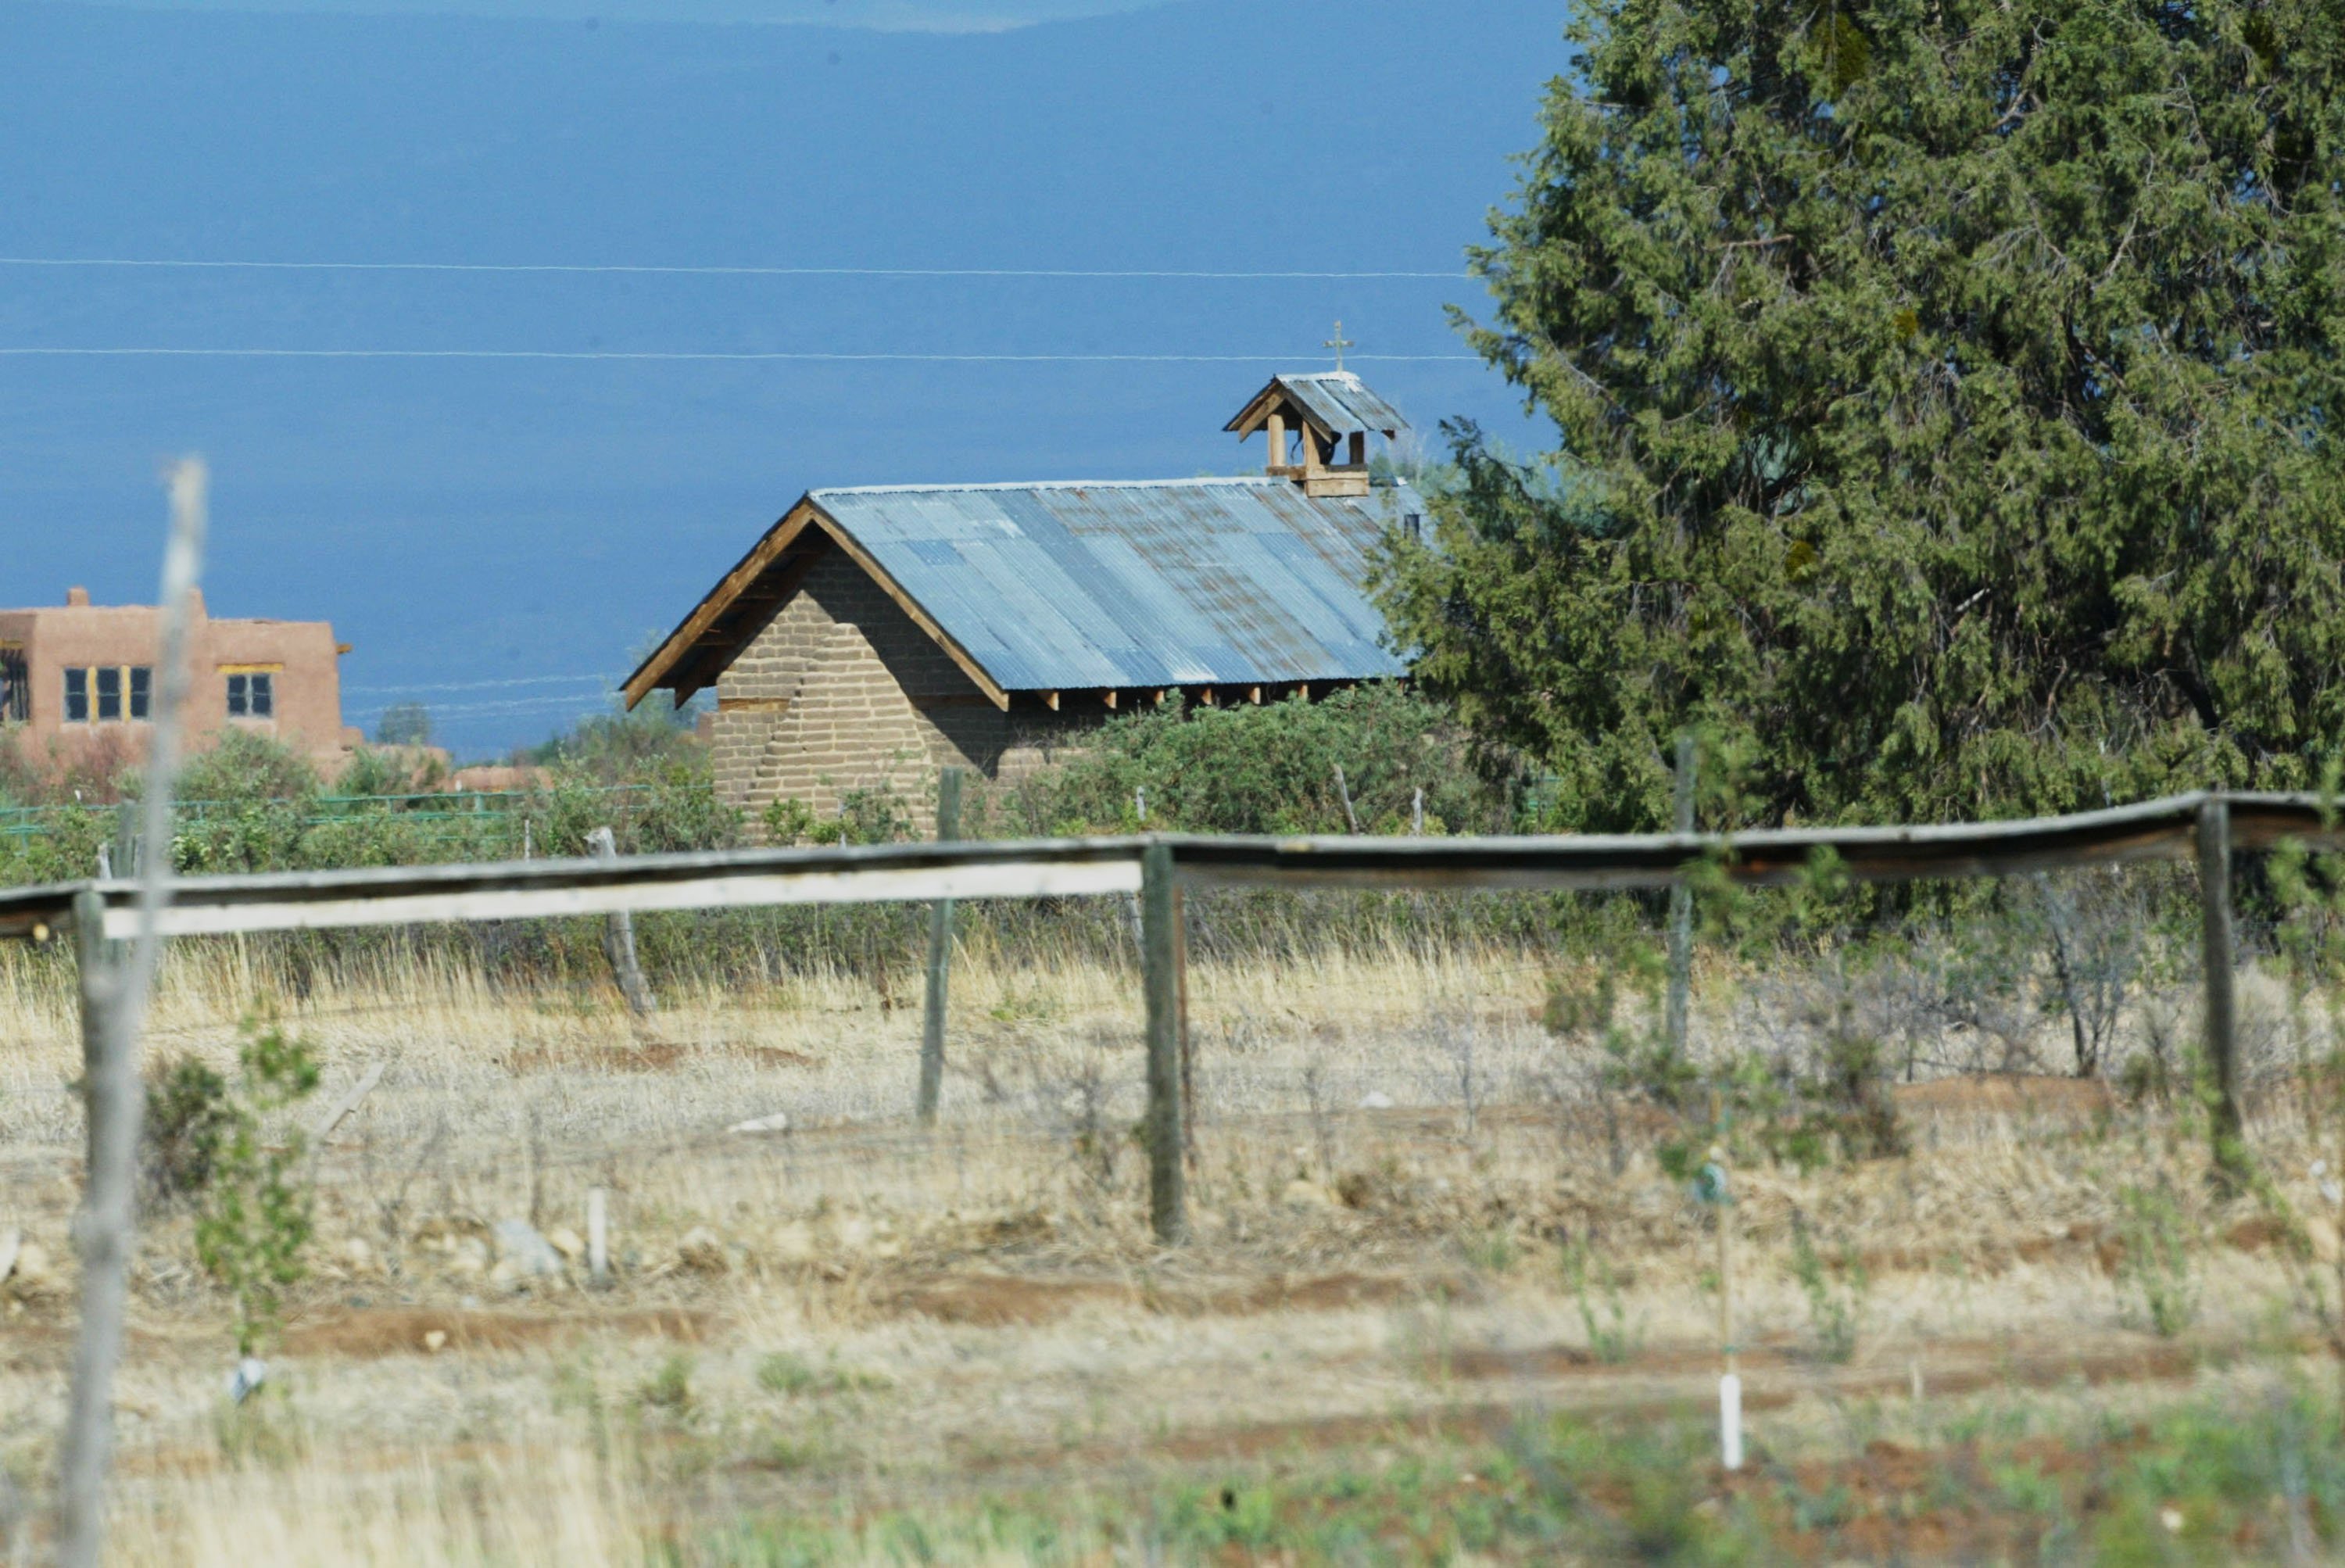 Eine Außenansicht einer Kapelle im Garten der Ranch von Julia Roberts' Ranch Taos, New Mexico, am 4. Juli 2002 | Quelle: Getty Images